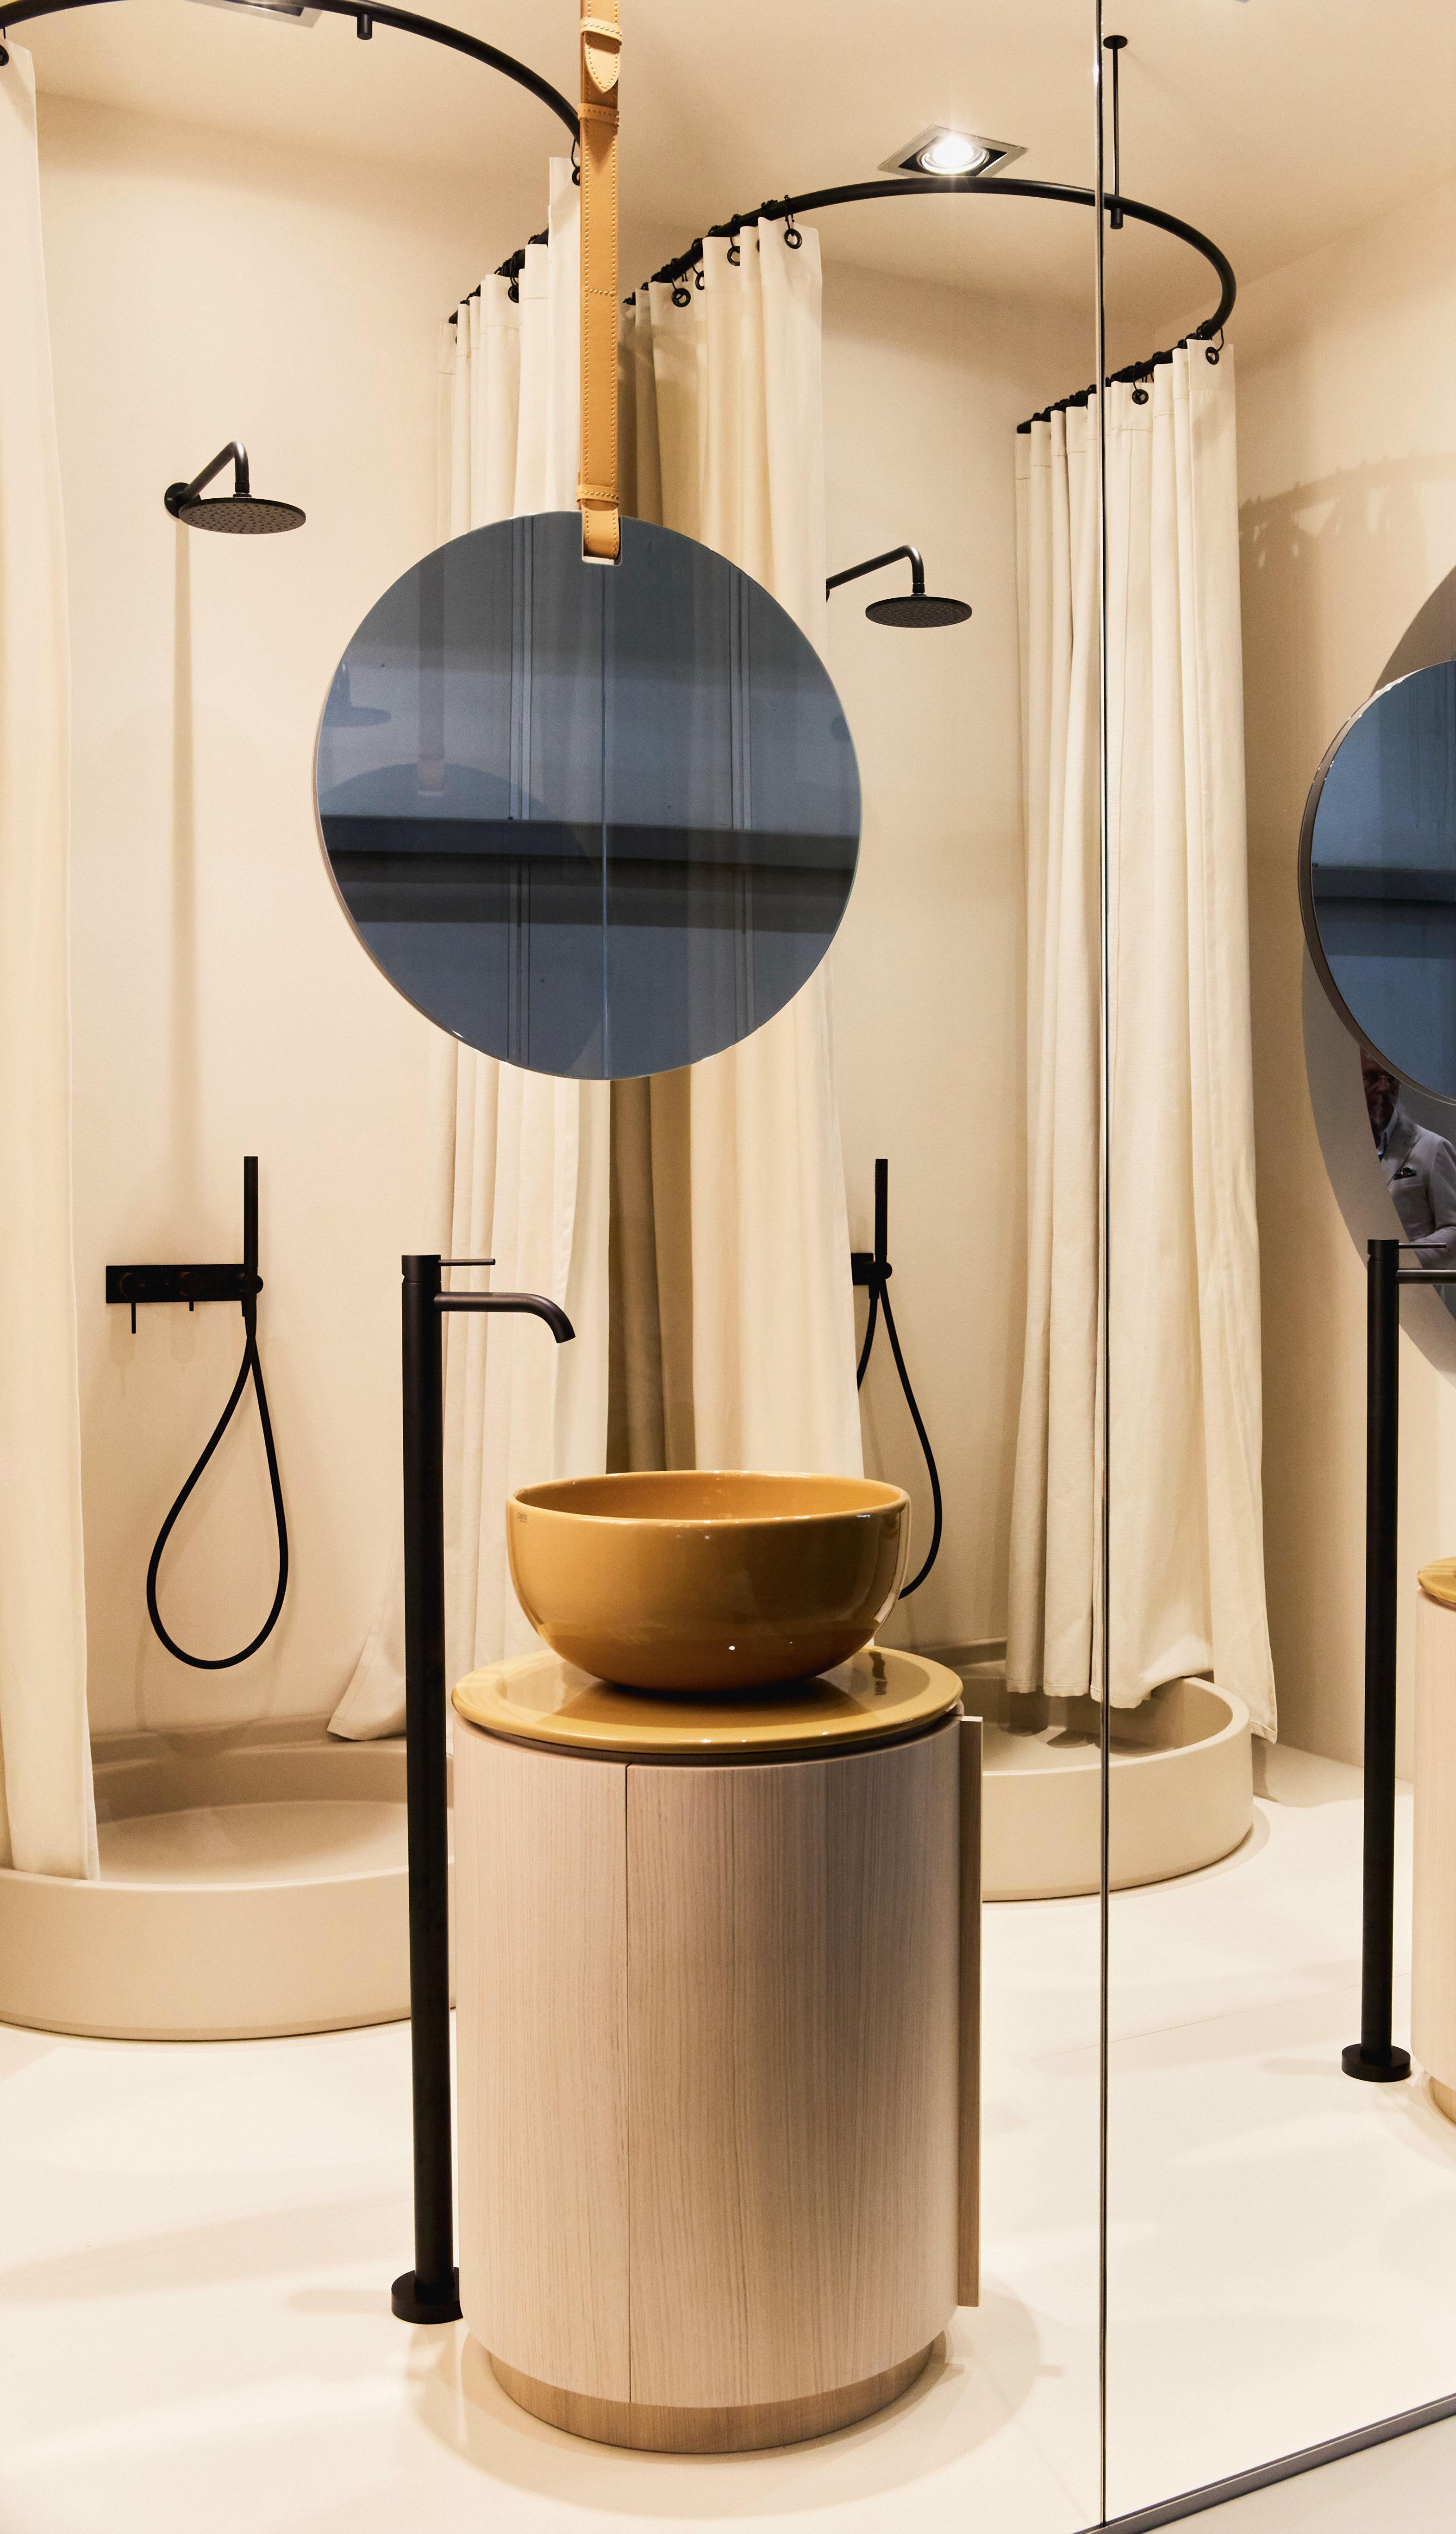 SALONE DEL MOBILE Milano kto z was chciałby taką łazienkę z podwójnym prysznicem i parawanem z naturalnej tkanint trendy design 2022 Mediolan